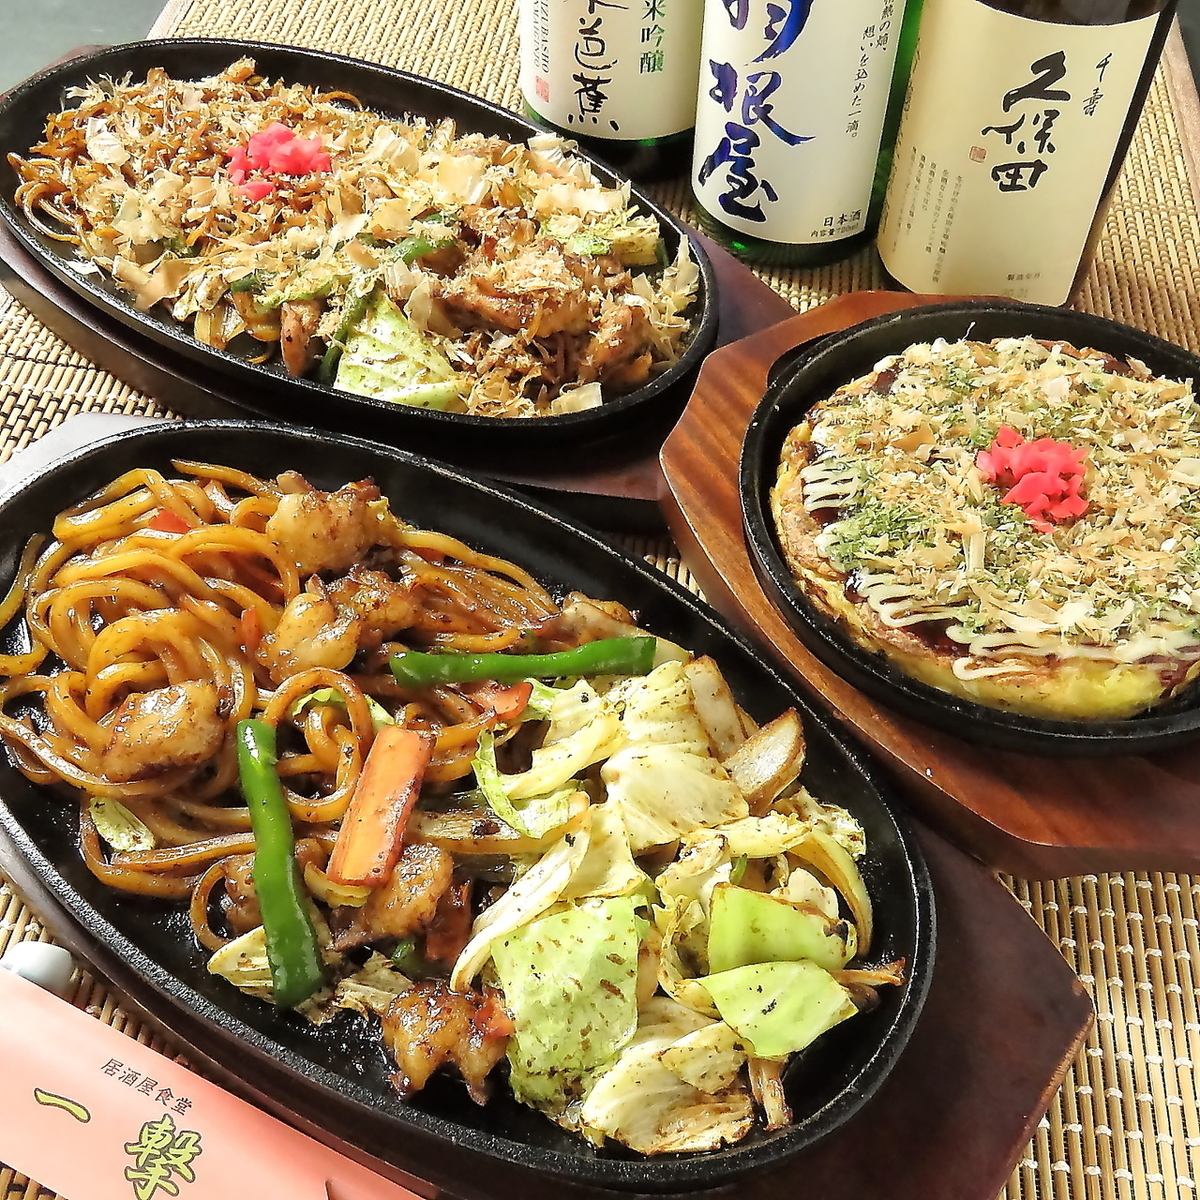 오카야마 출신의 점주가 만드는 오카야마의 가정의 맛! B급 음식에서도 상을 받는 요리와 술을 즐긴다♪